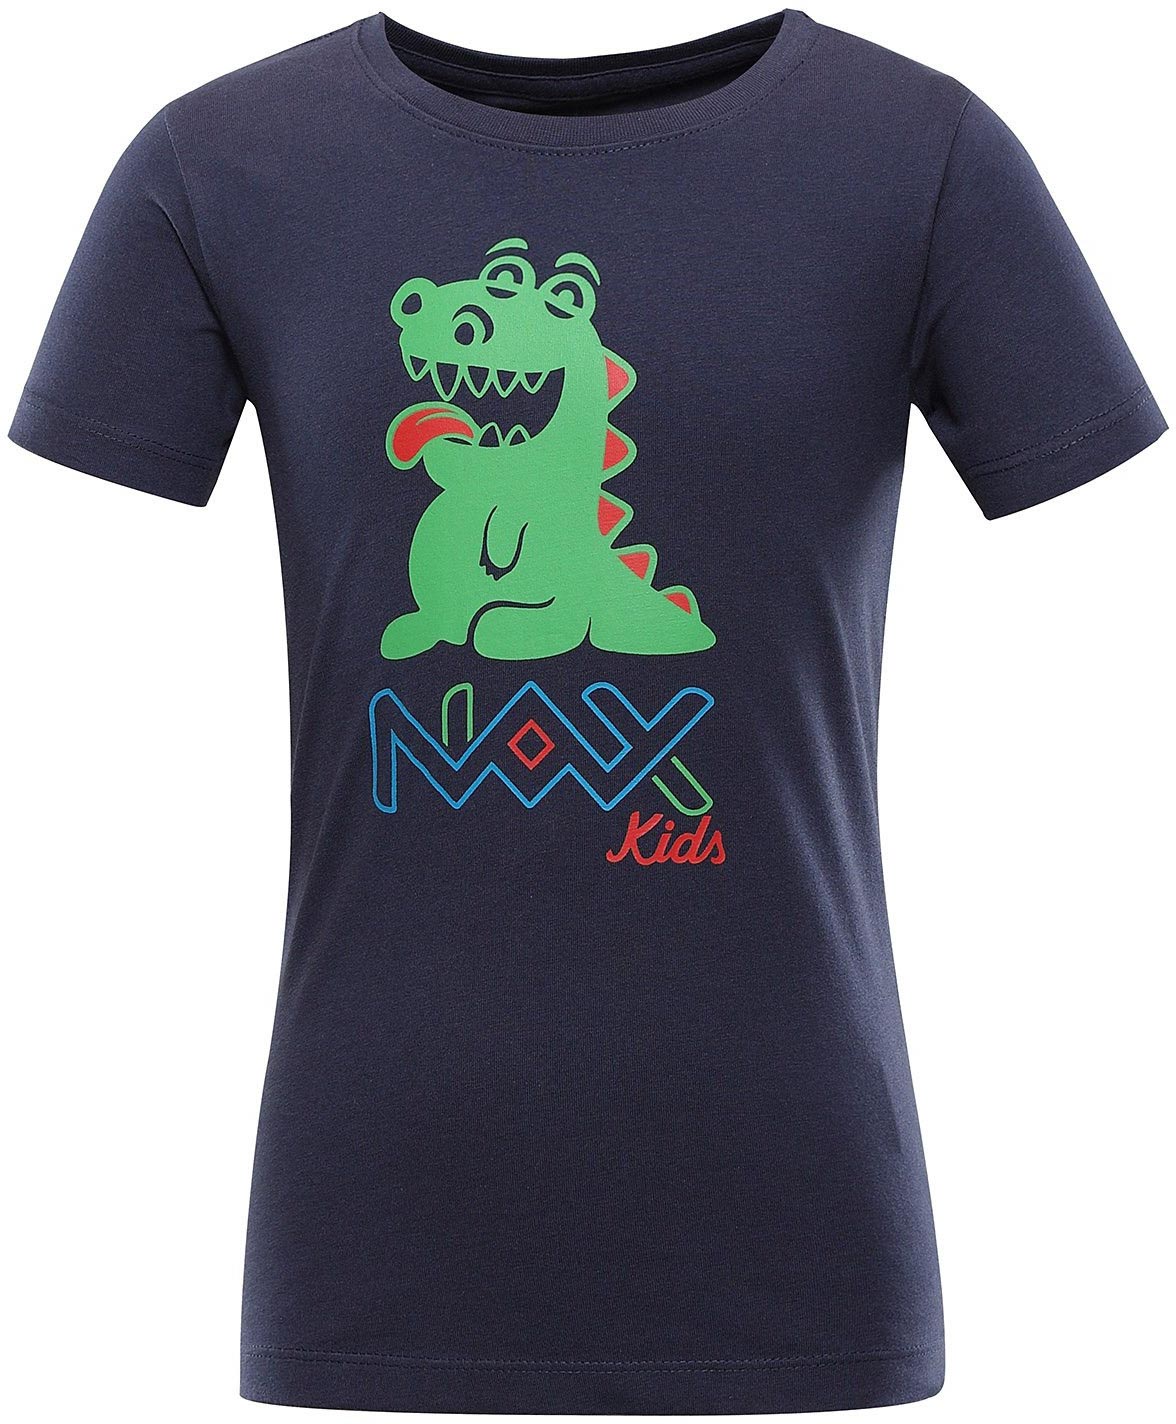 Dětské triko Nax Lievro|128-134